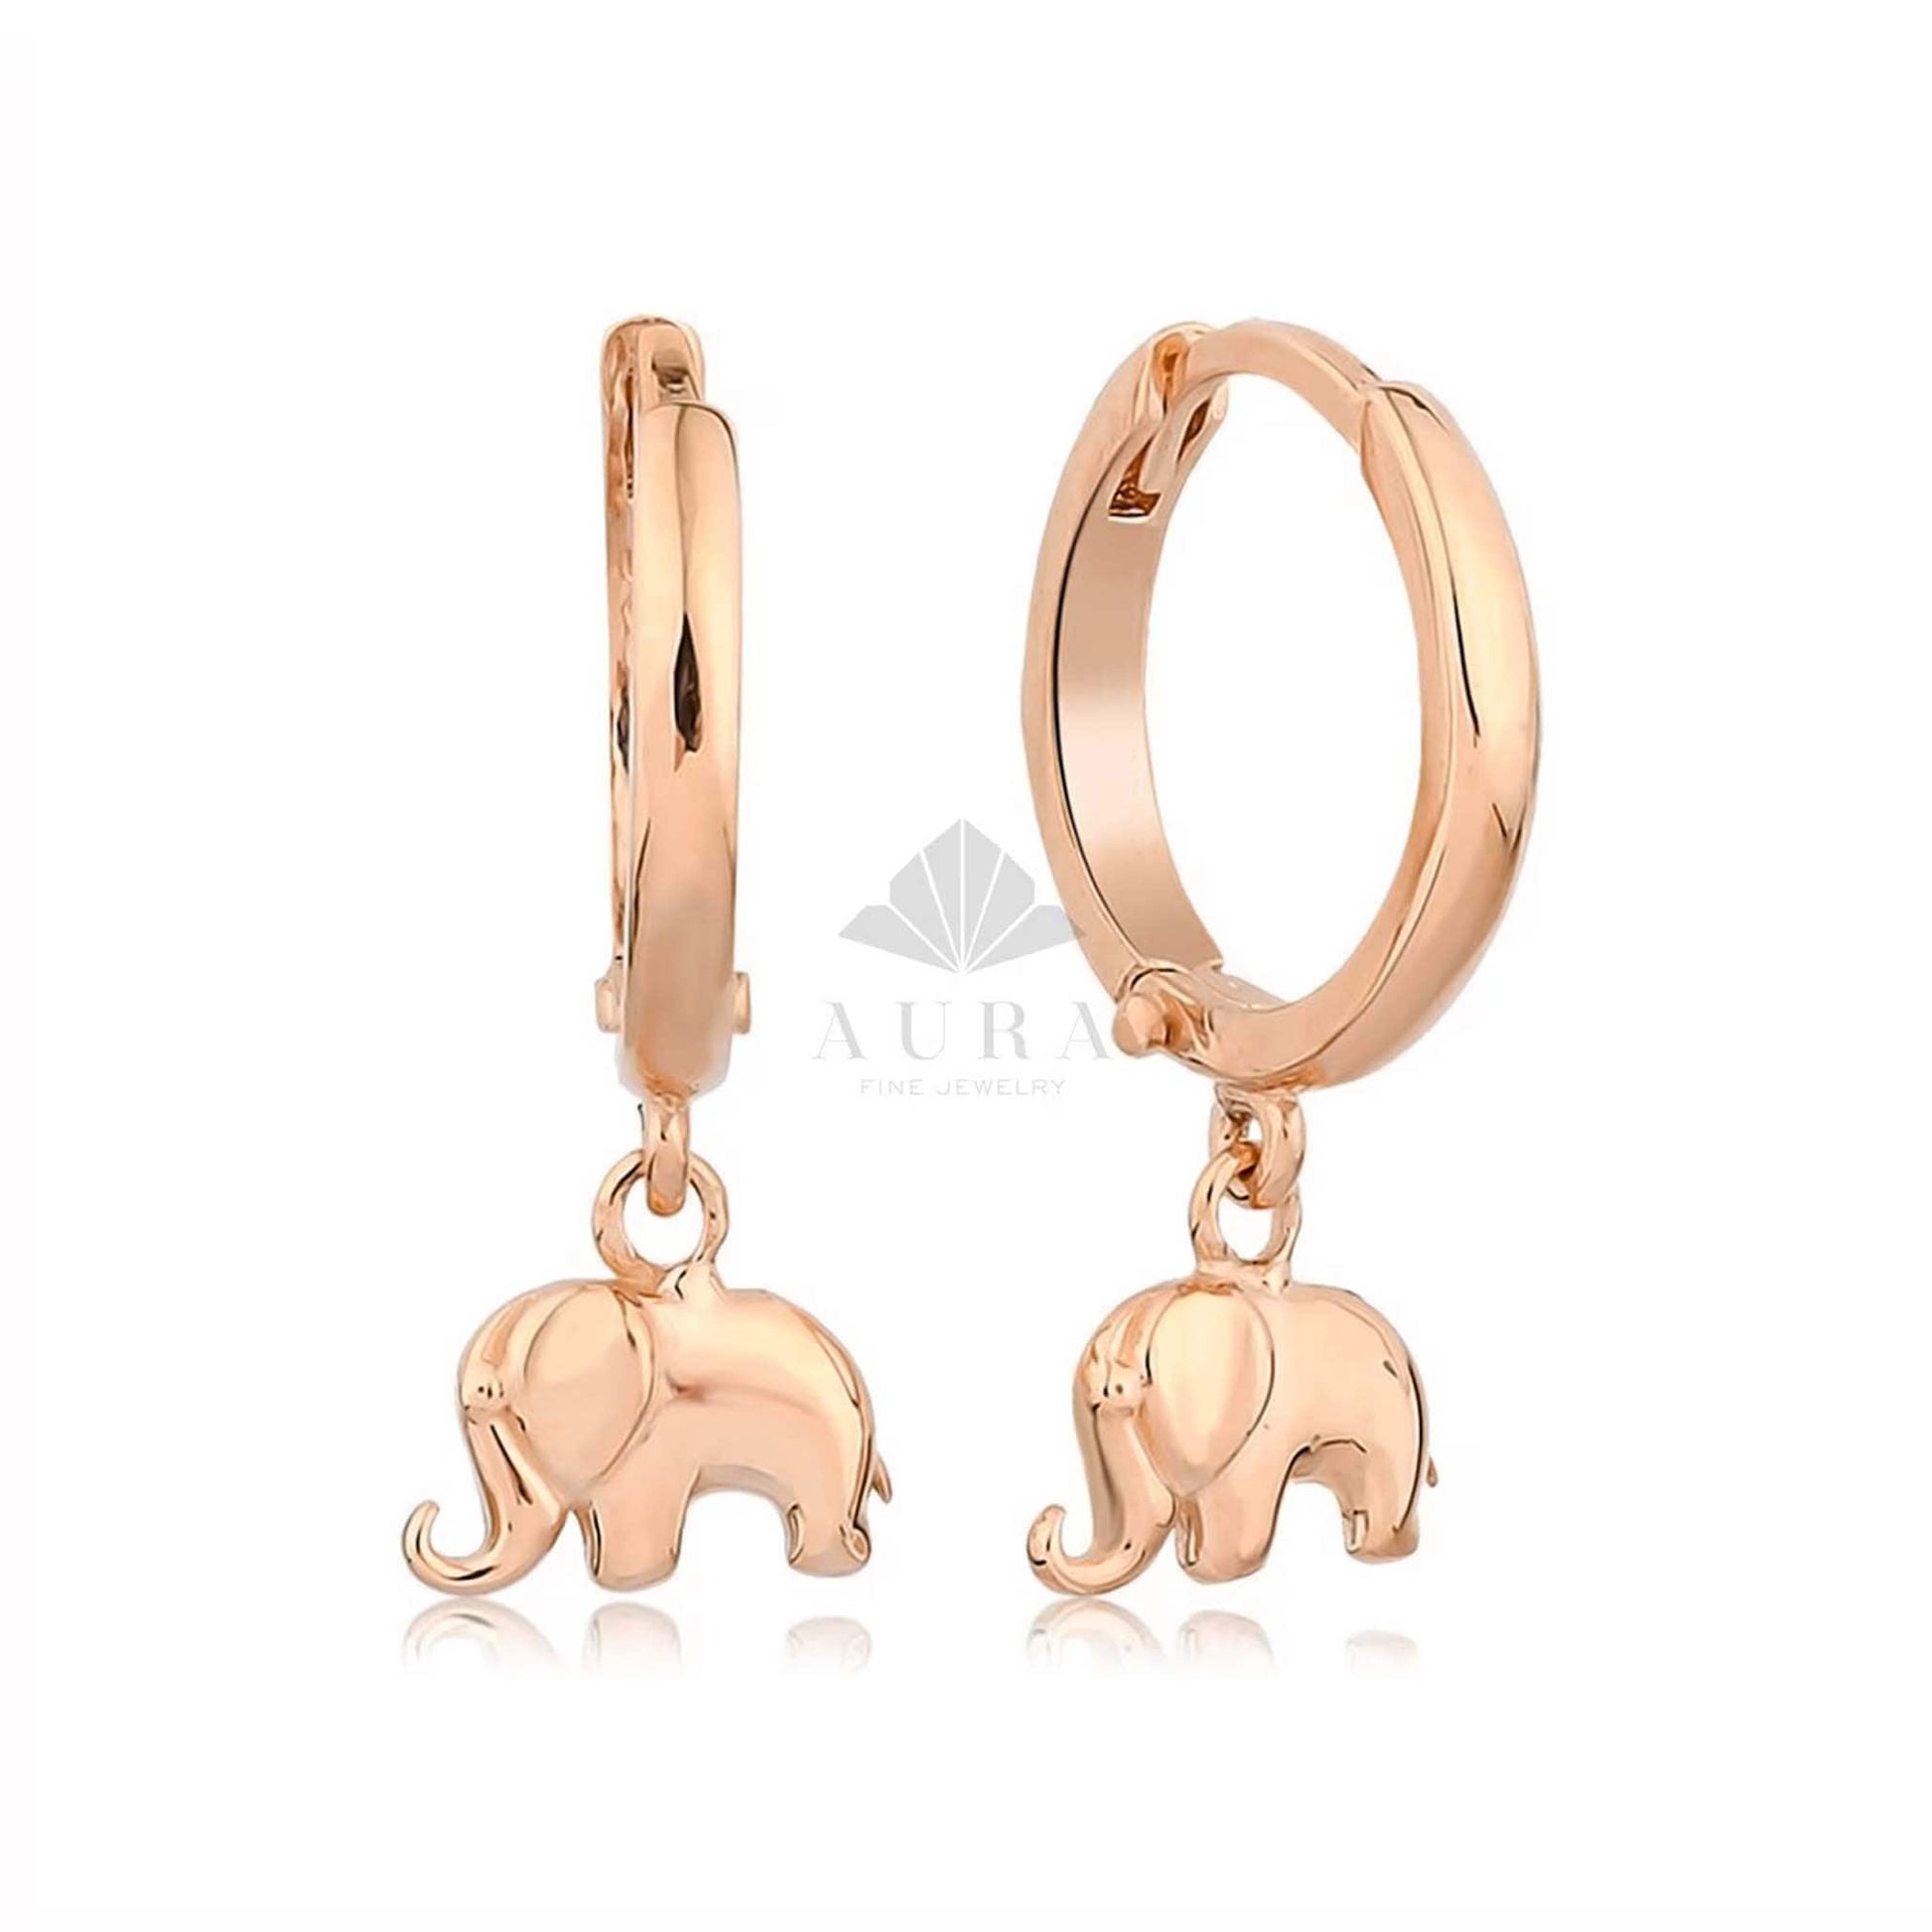 14K Gold Elephant Earrings, Elephant Dangle Earrings, Gold Drop Earrings, Hoop Earrings, Statement Cute Earrings, Minimalist Earrings